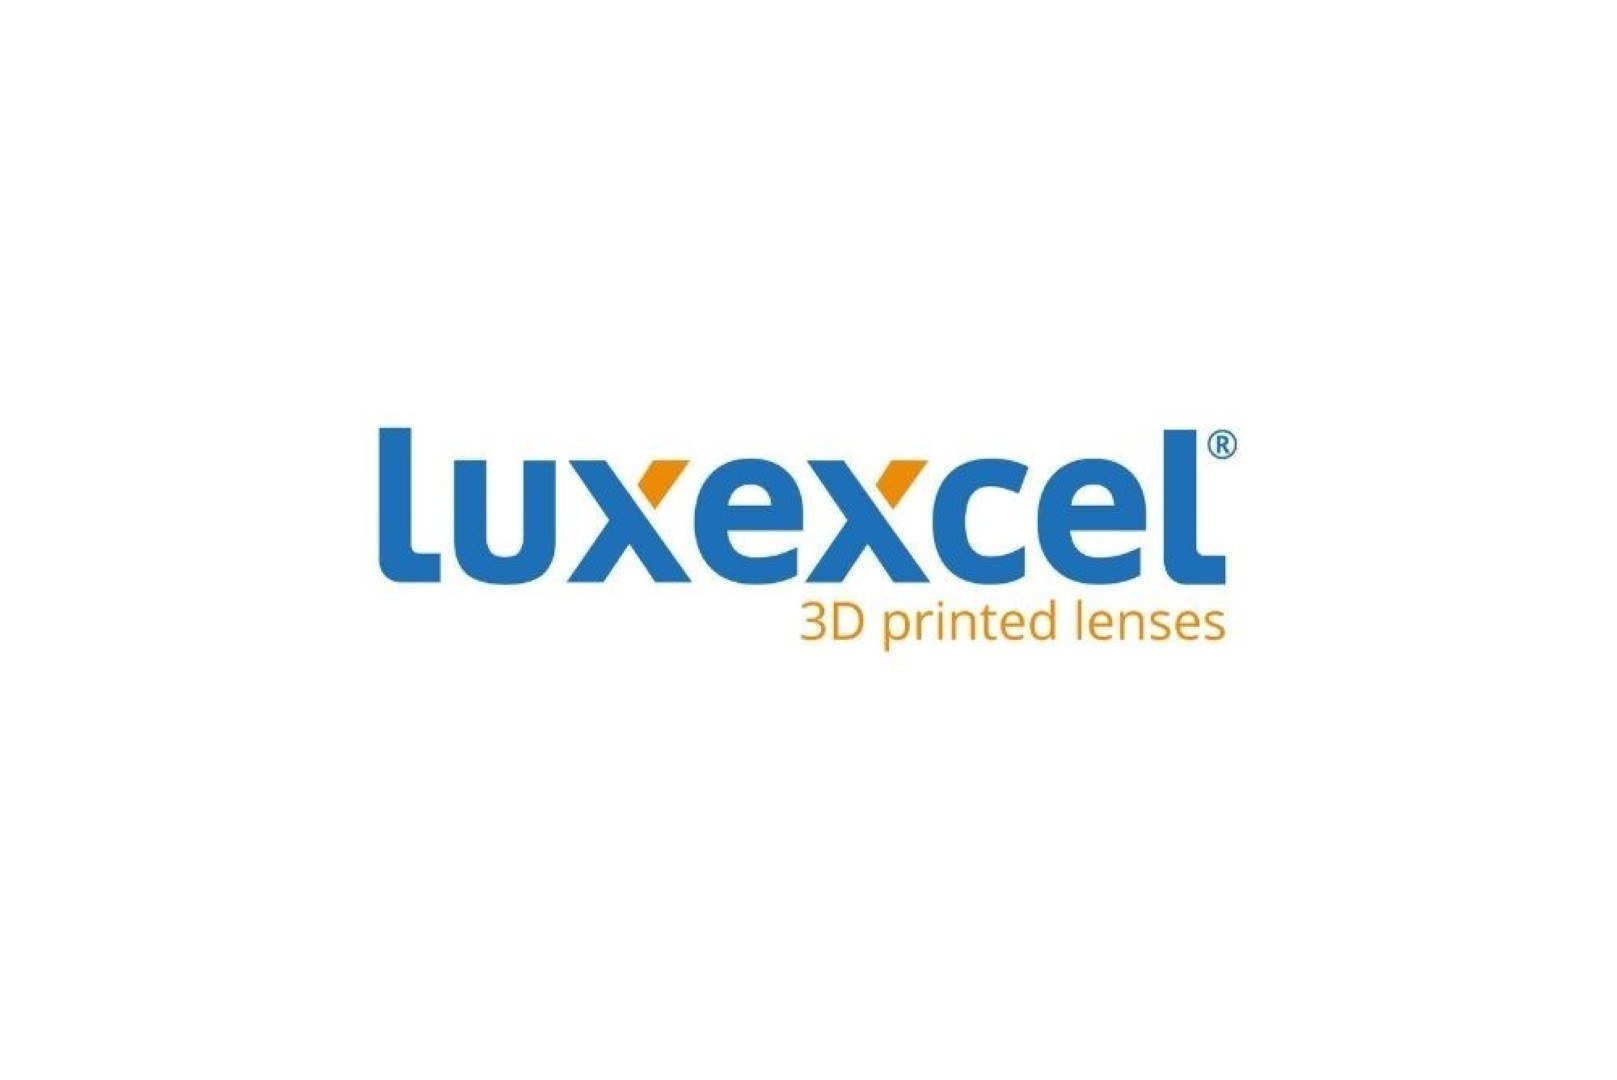 Luxexcel